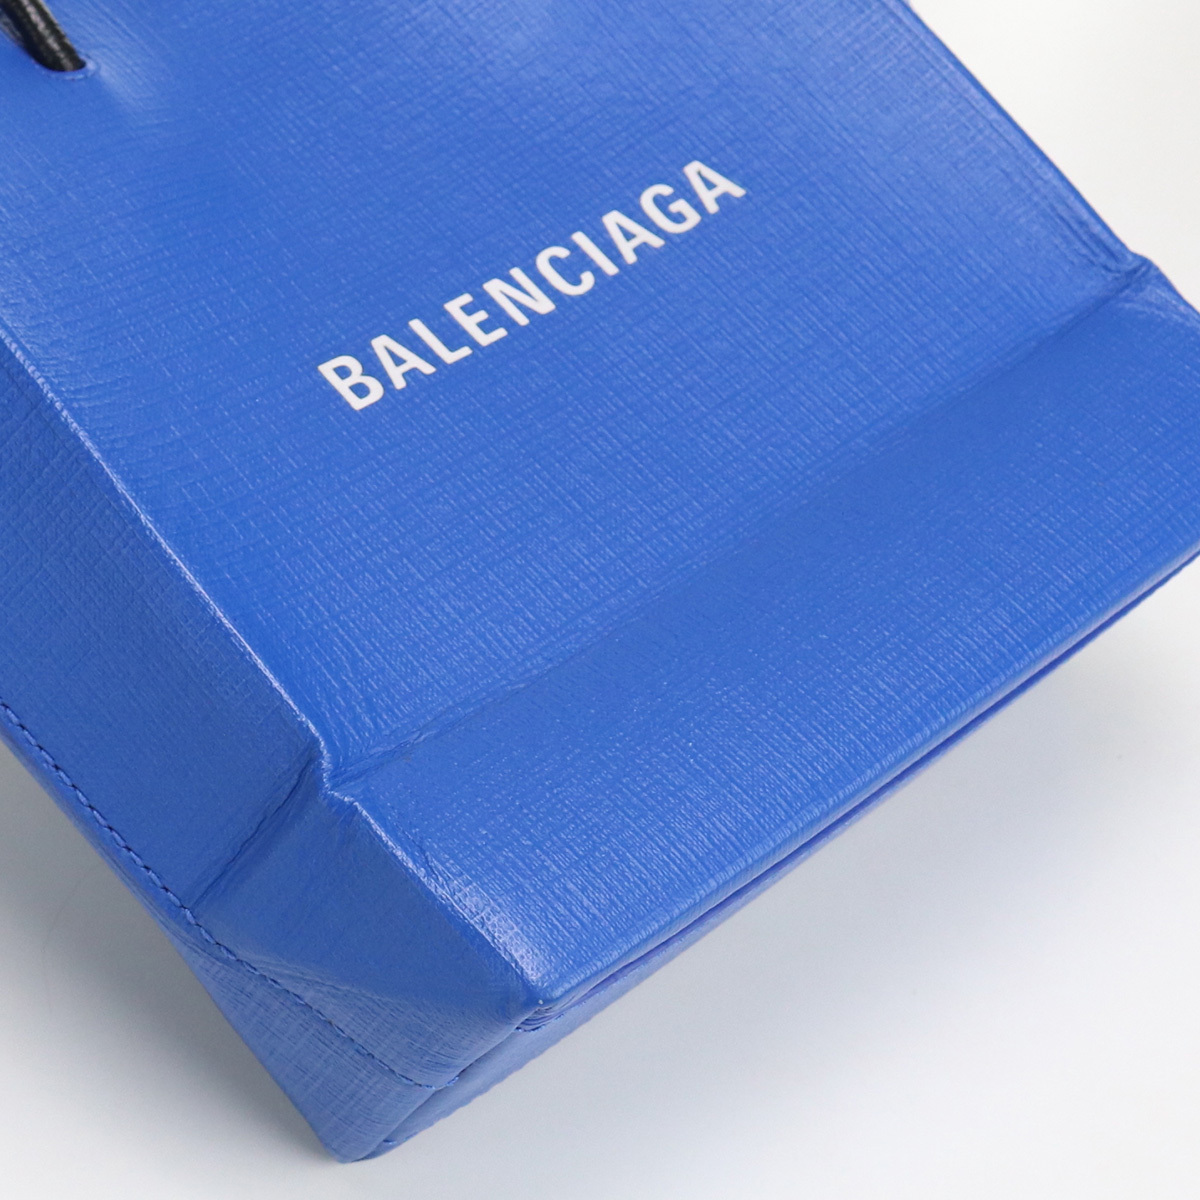  б/у хороший товар Balenciaga BALENCIAGA ручная сумочка бренд покупка большая сумка XXS кожа 597858 голубой разряд :A us-2 2WAY плечо 